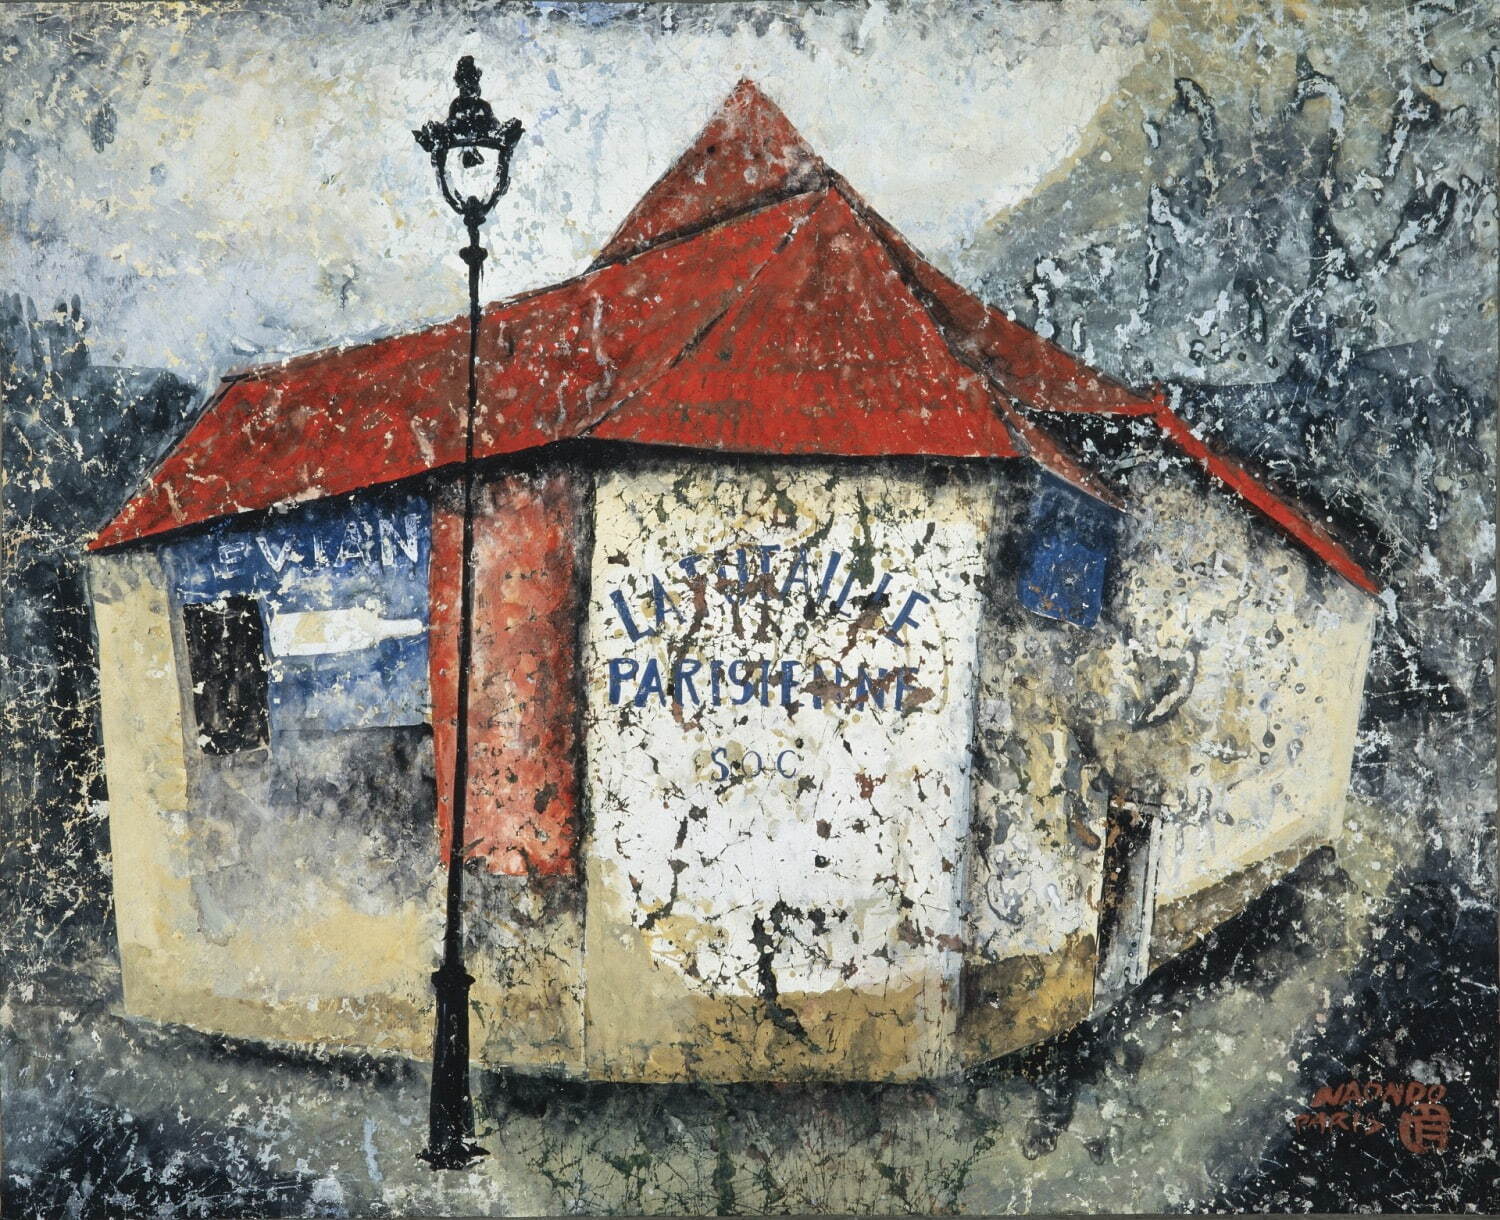 中村直人の展覧会が目黒区美術館で - 50年代パリ“画家として活躍した 